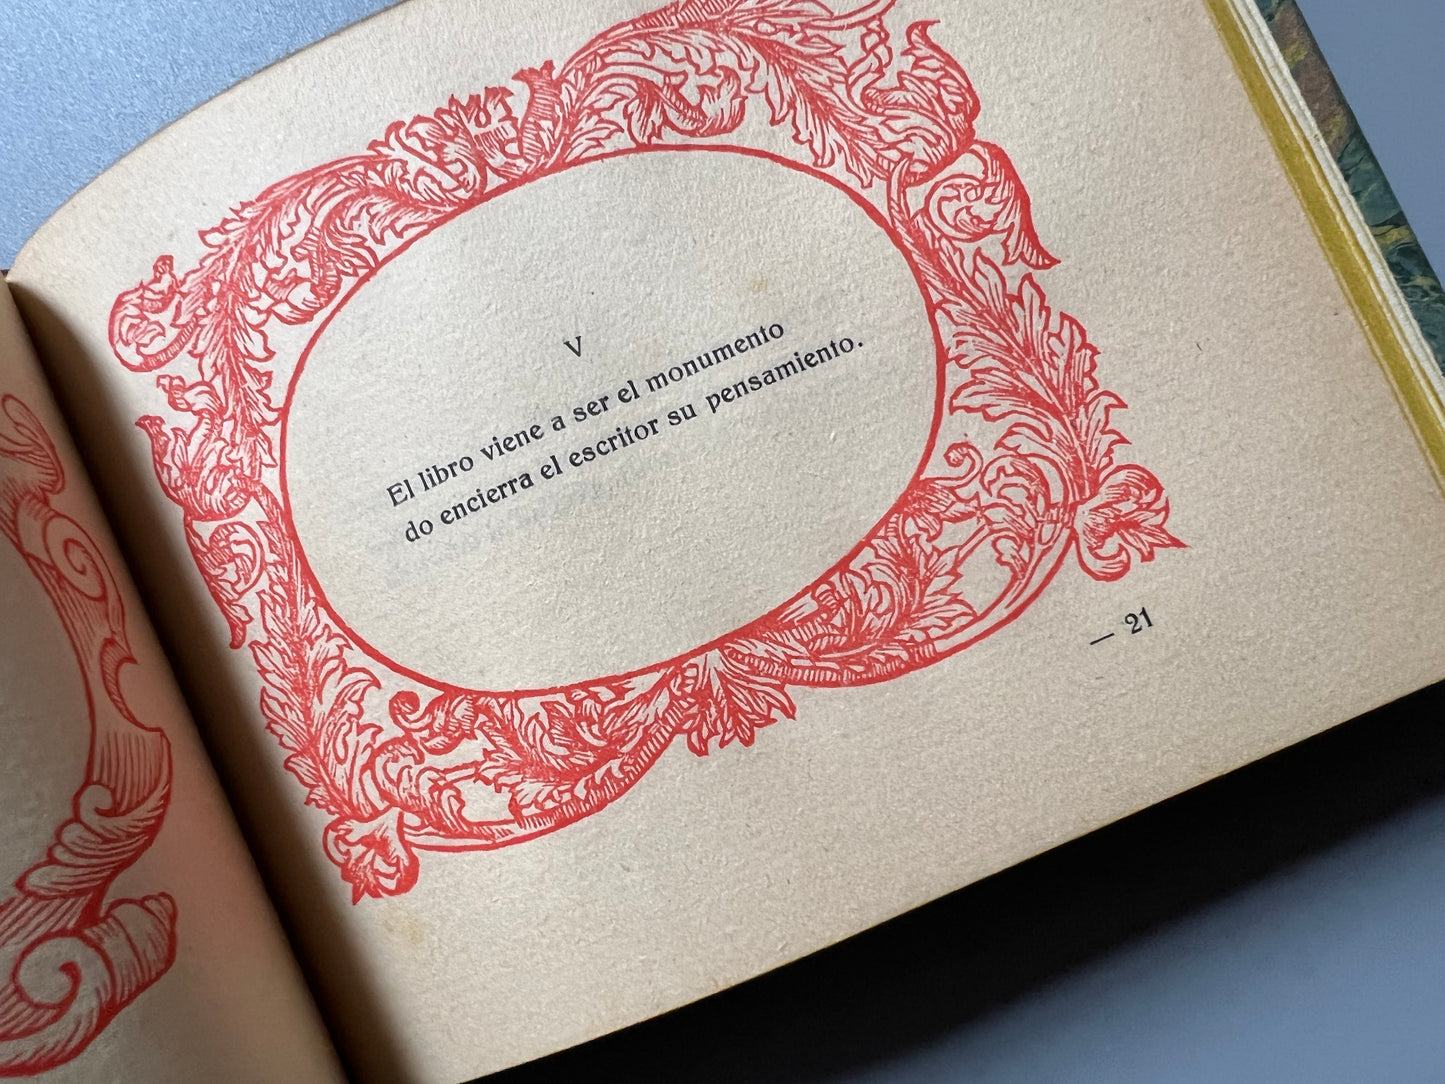 Del amor al libro, aforismos rimados, Viada y Lluch - 1927